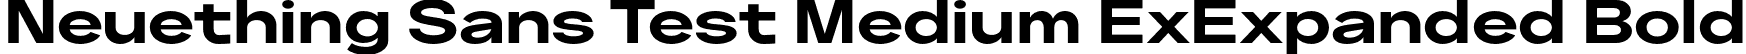 Neuething Sans Test Medium ExExpanded Bold font | NeuethingVariableTest-BoldExtraExpanded.otf